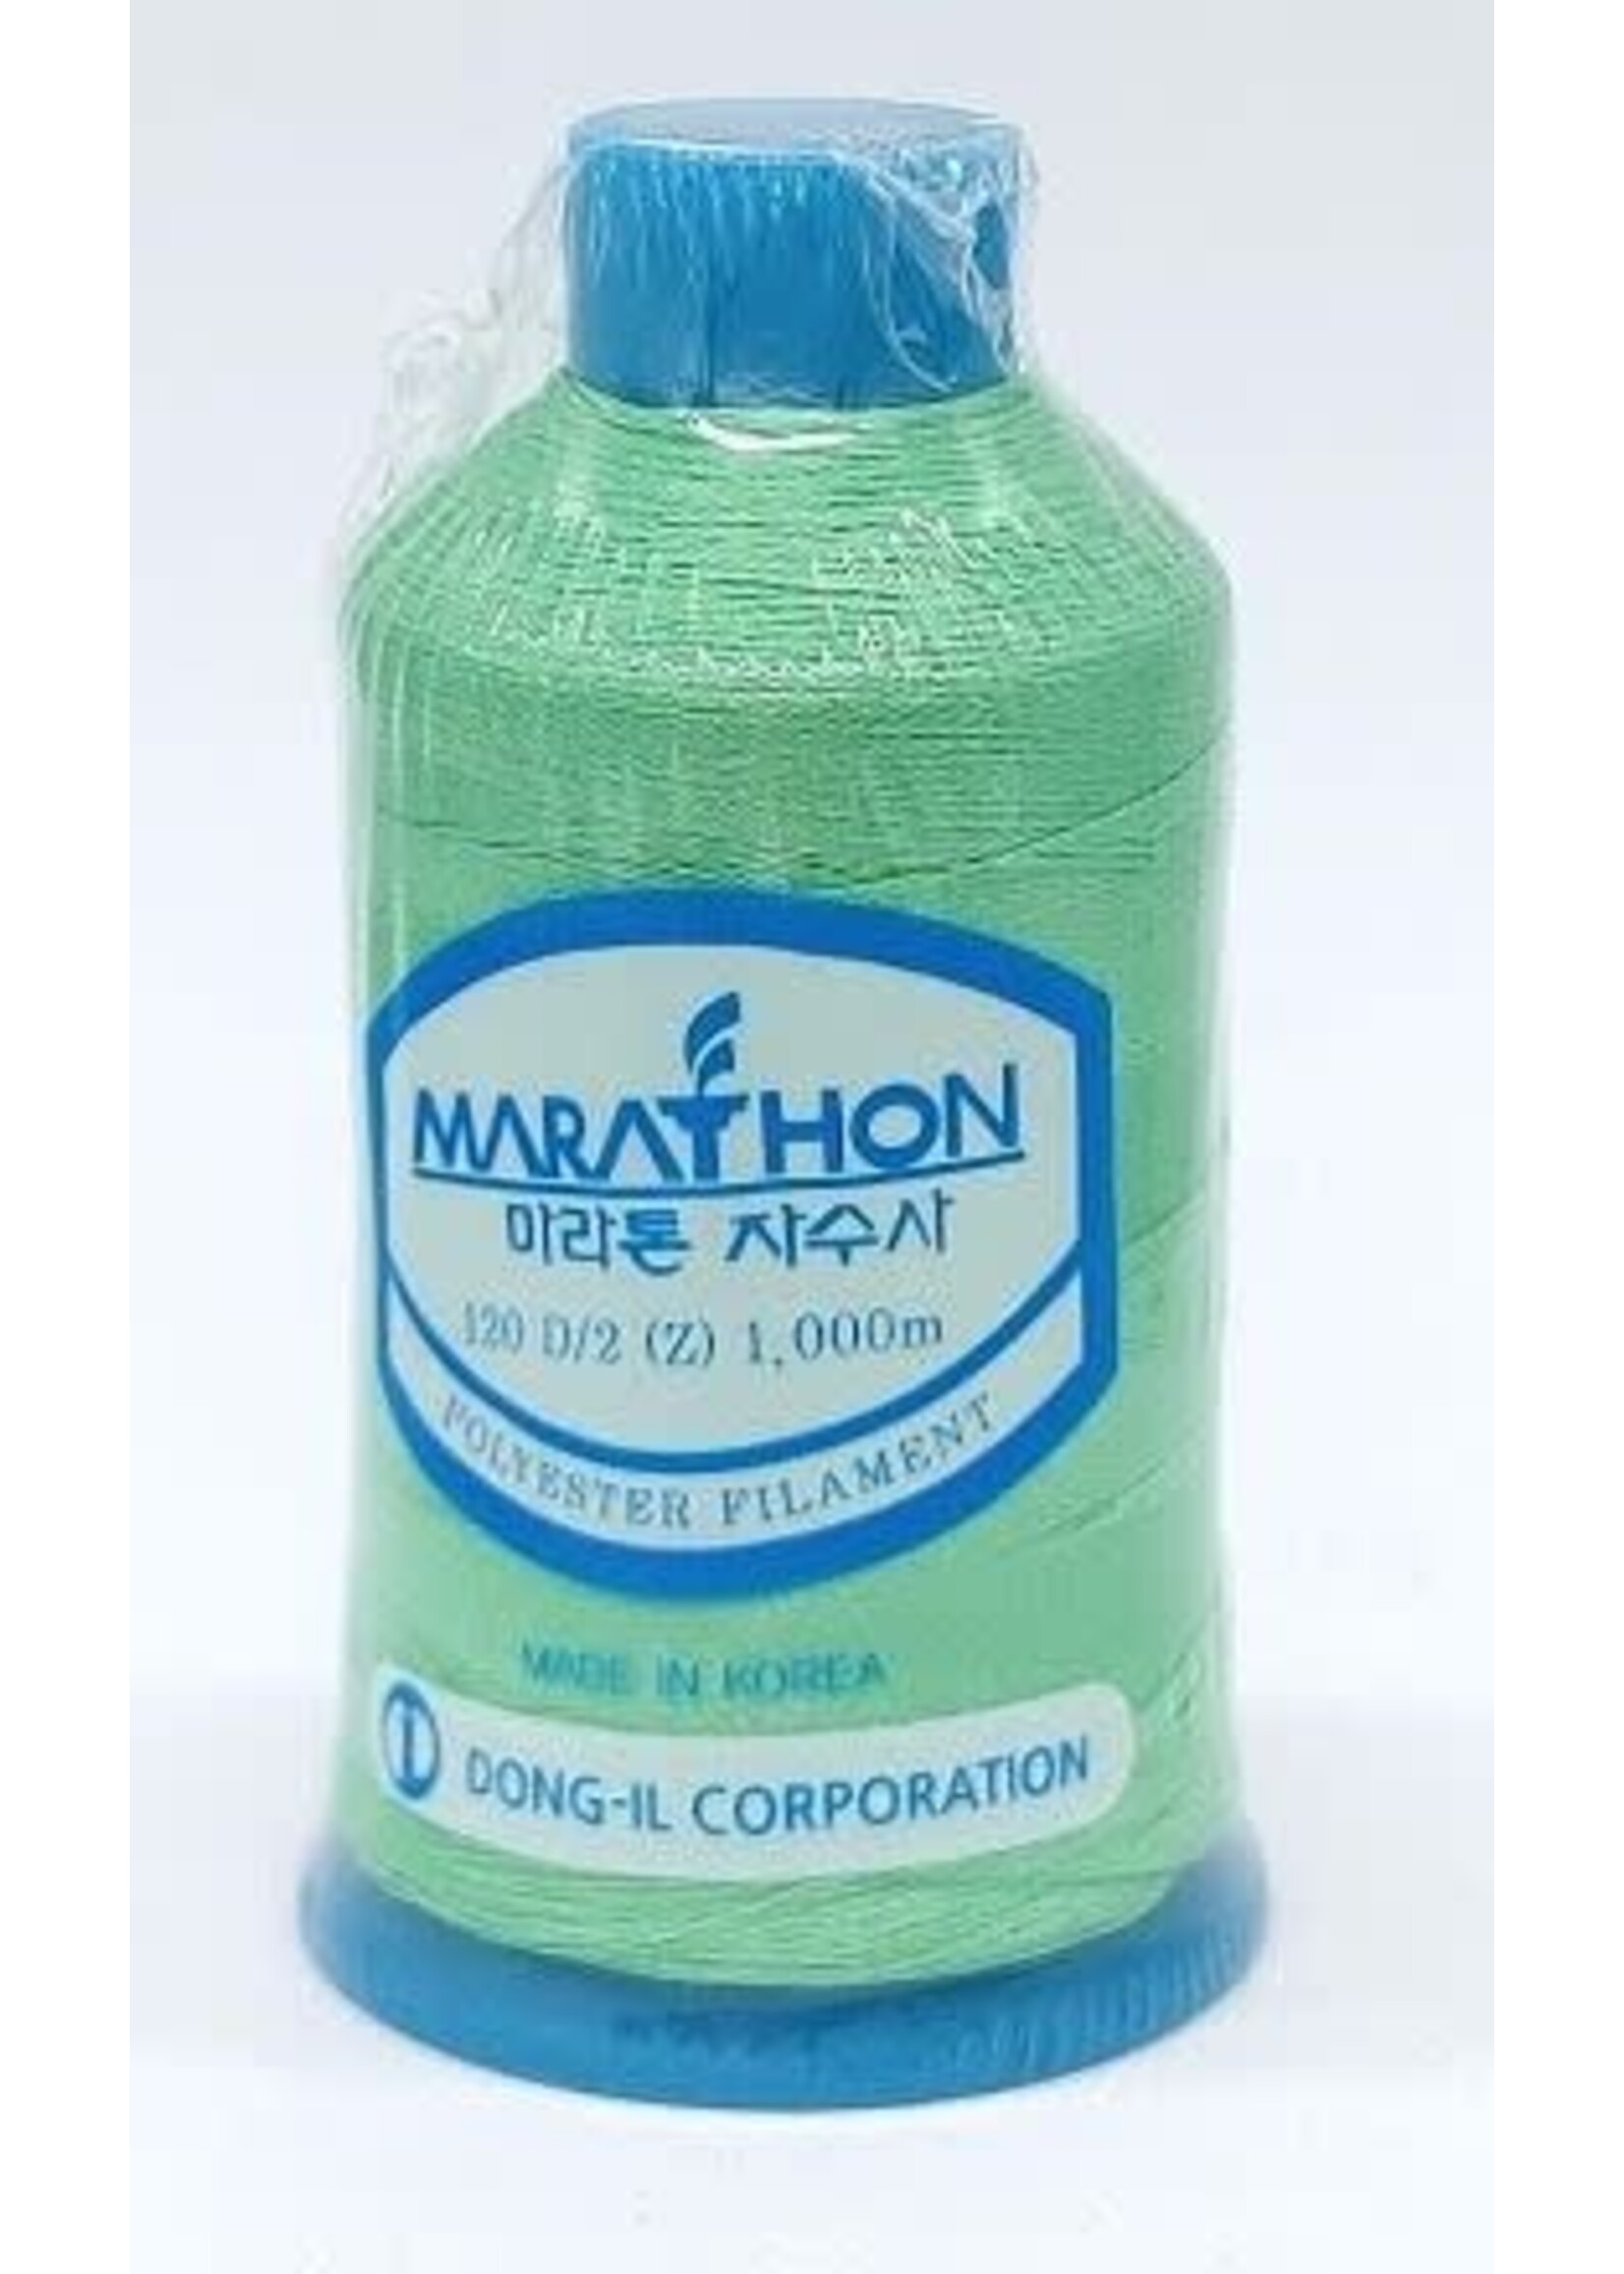 Marathon Threads Marathon Embroidery Thread 1000m- #2235 Green - Light